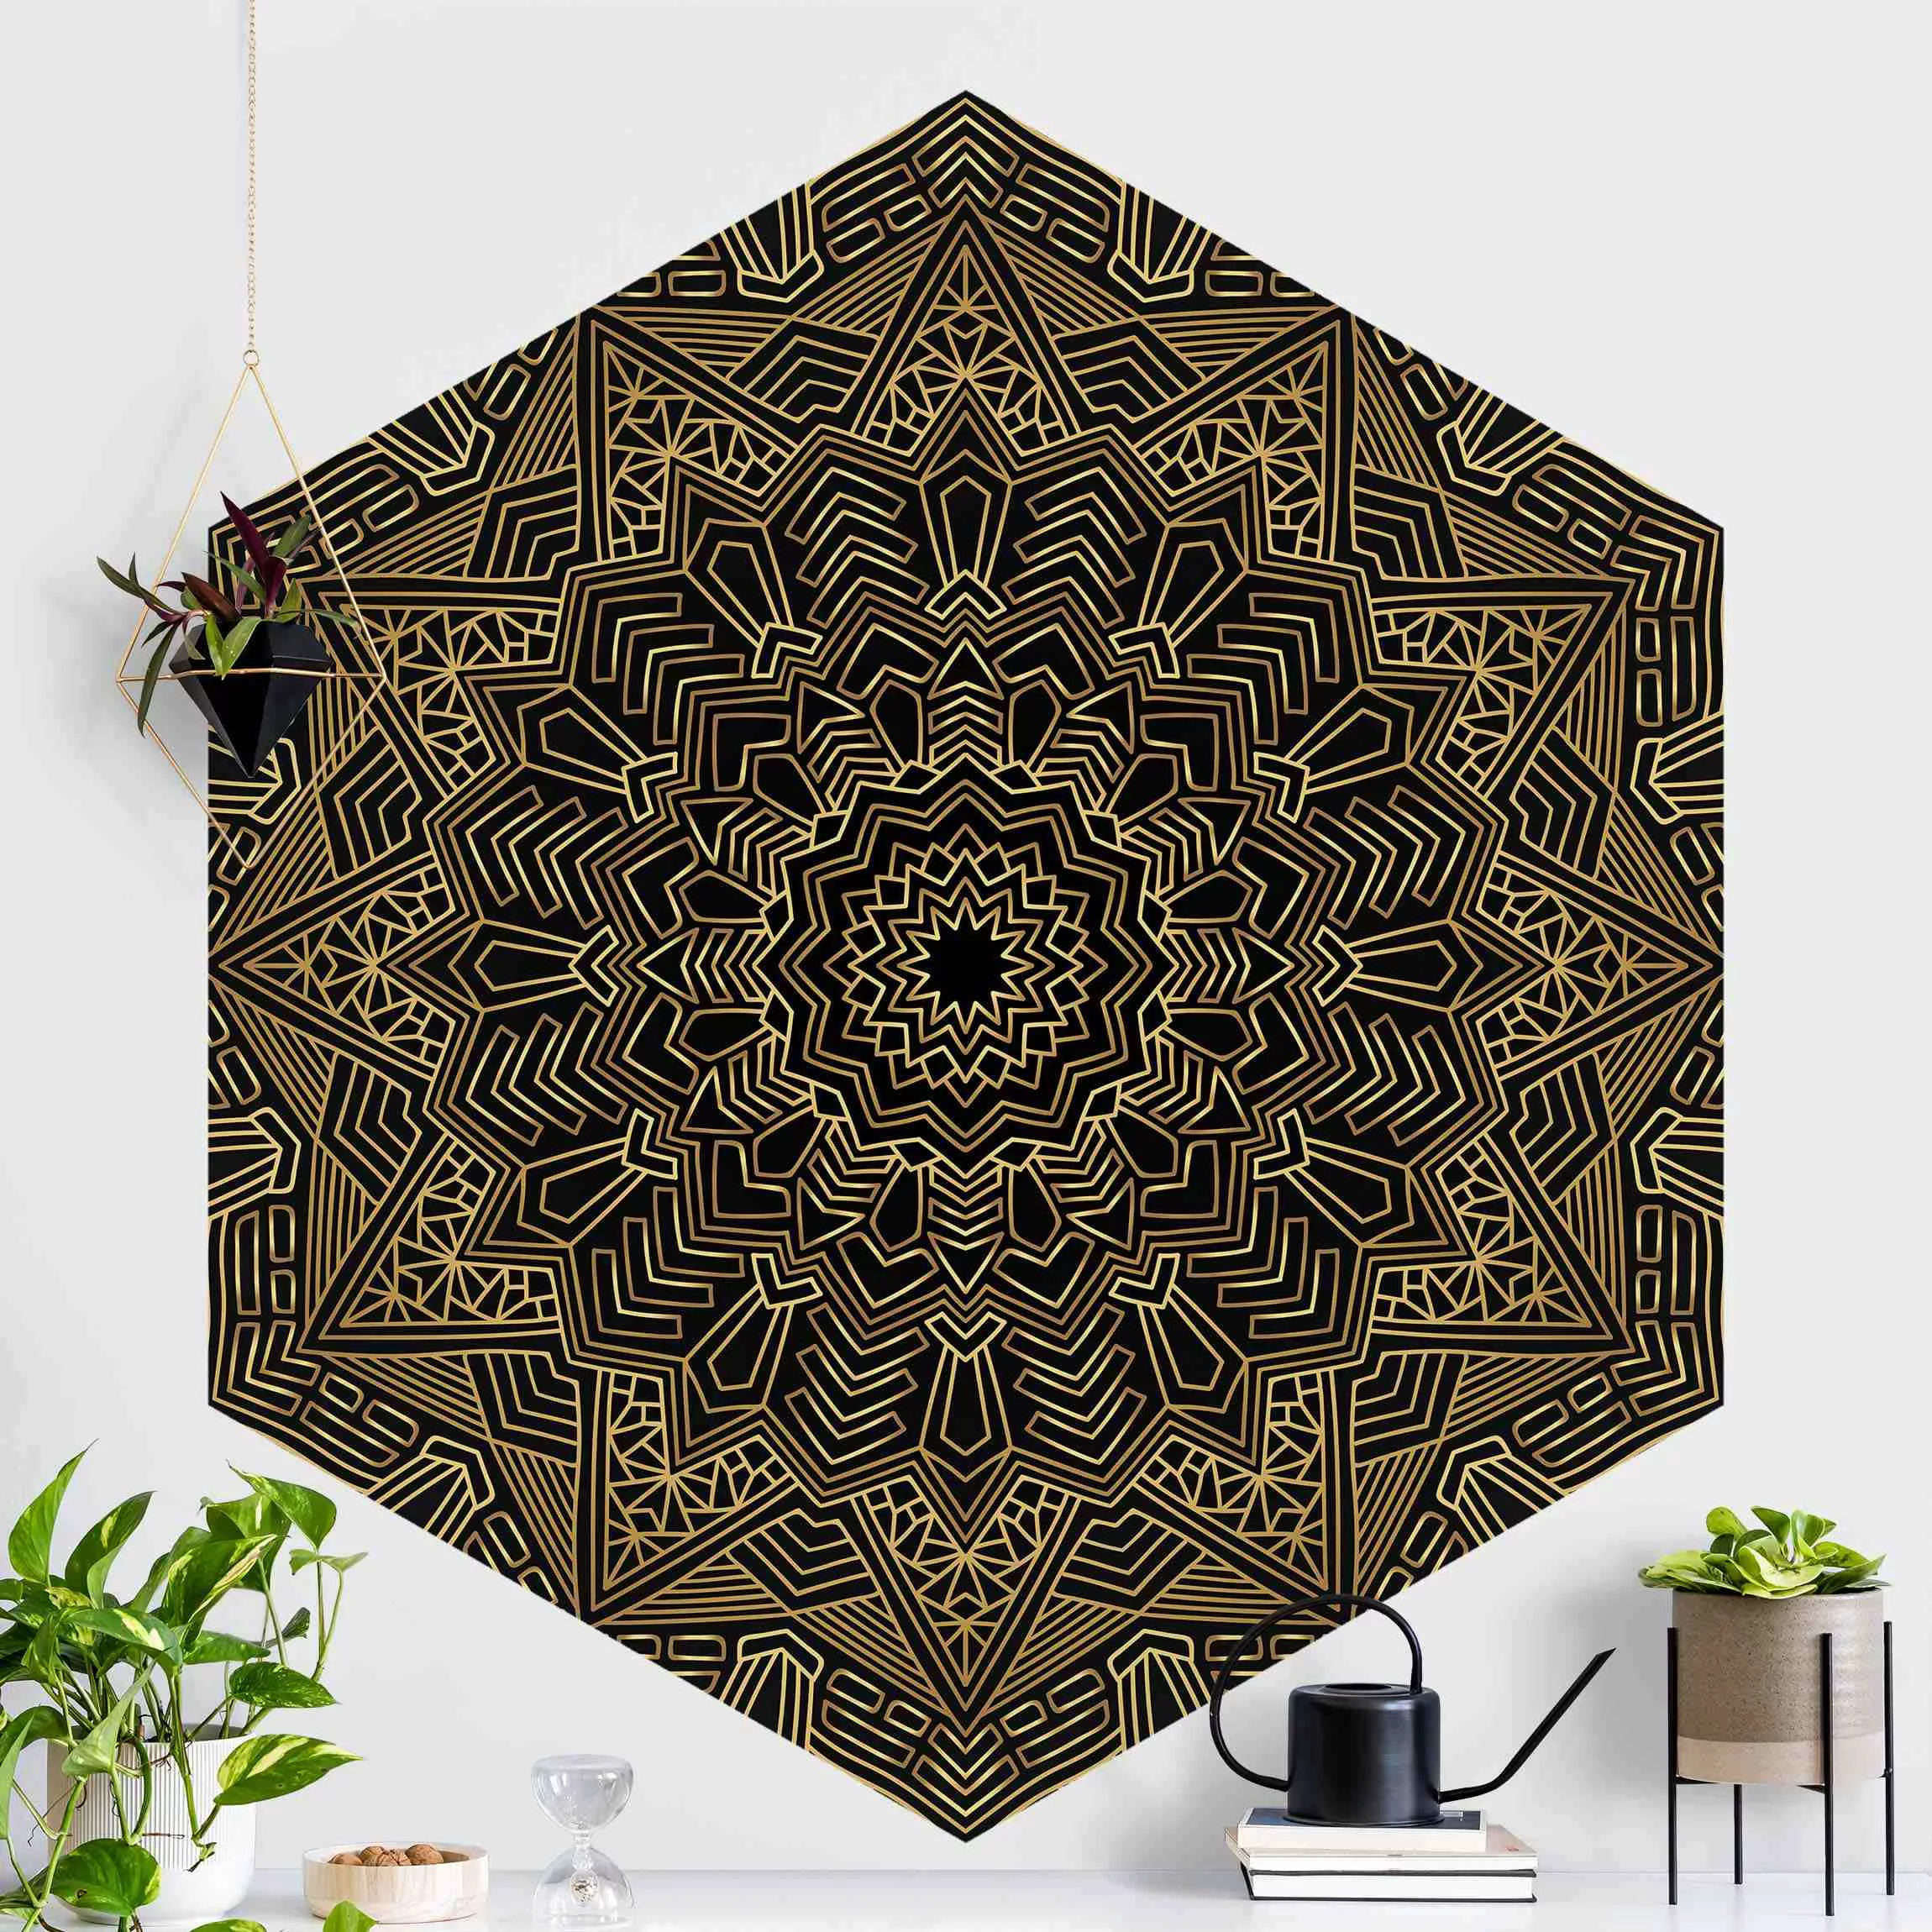 Hexagon Mustertapete selbstklebend Mandala Stern Muster gold schwarz günstig online kaufen